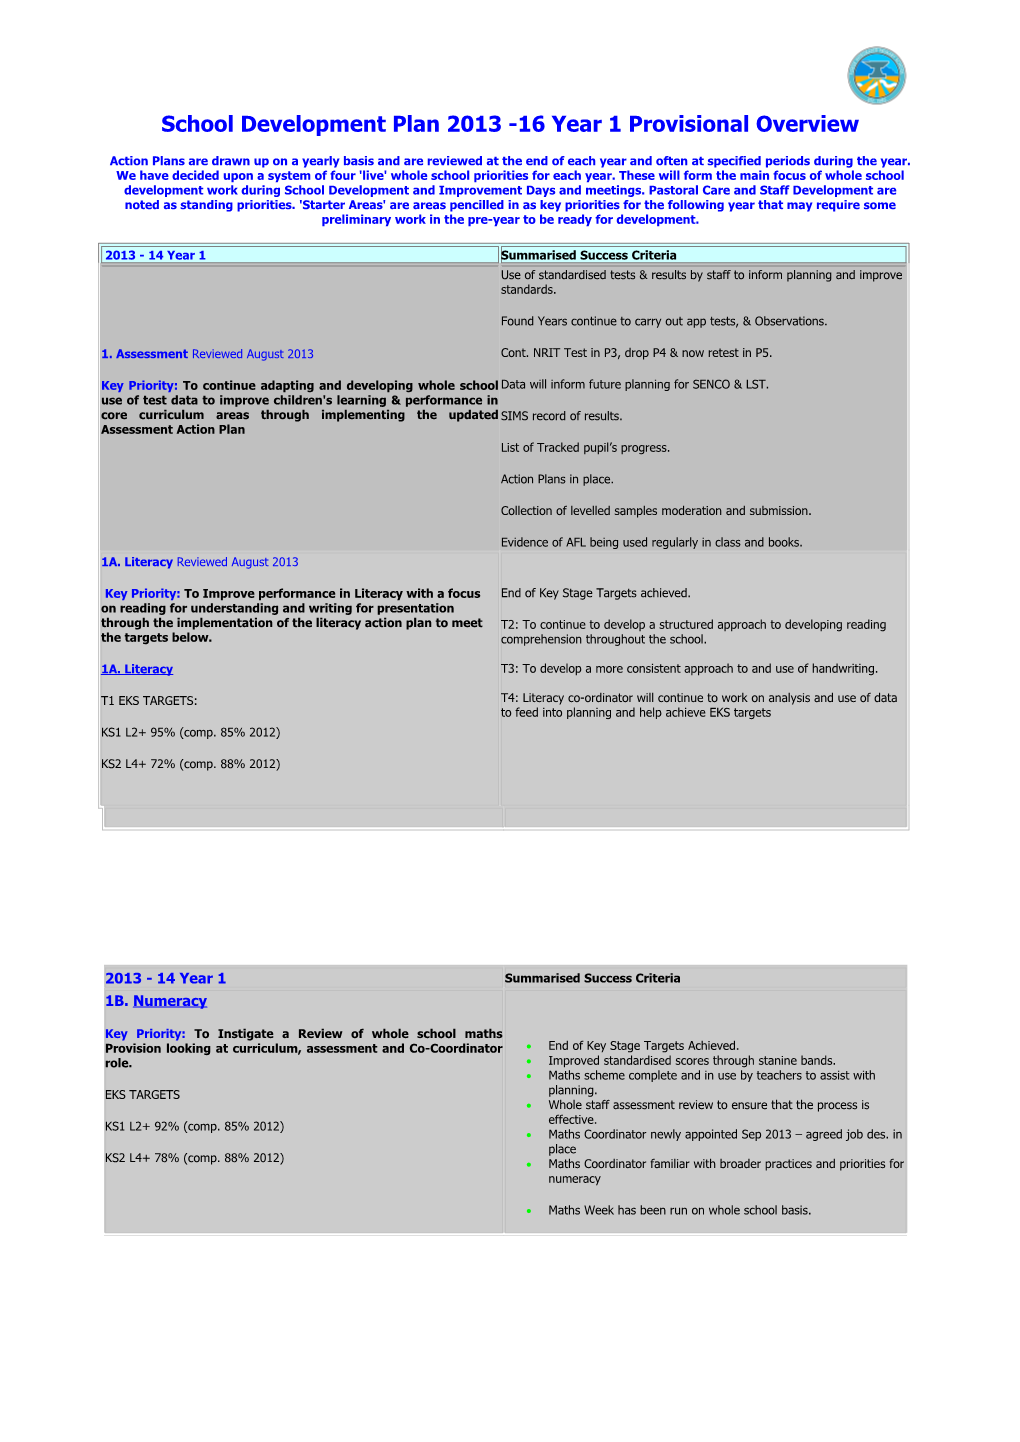 School Development Plan 2010 -13 Three Year Overview